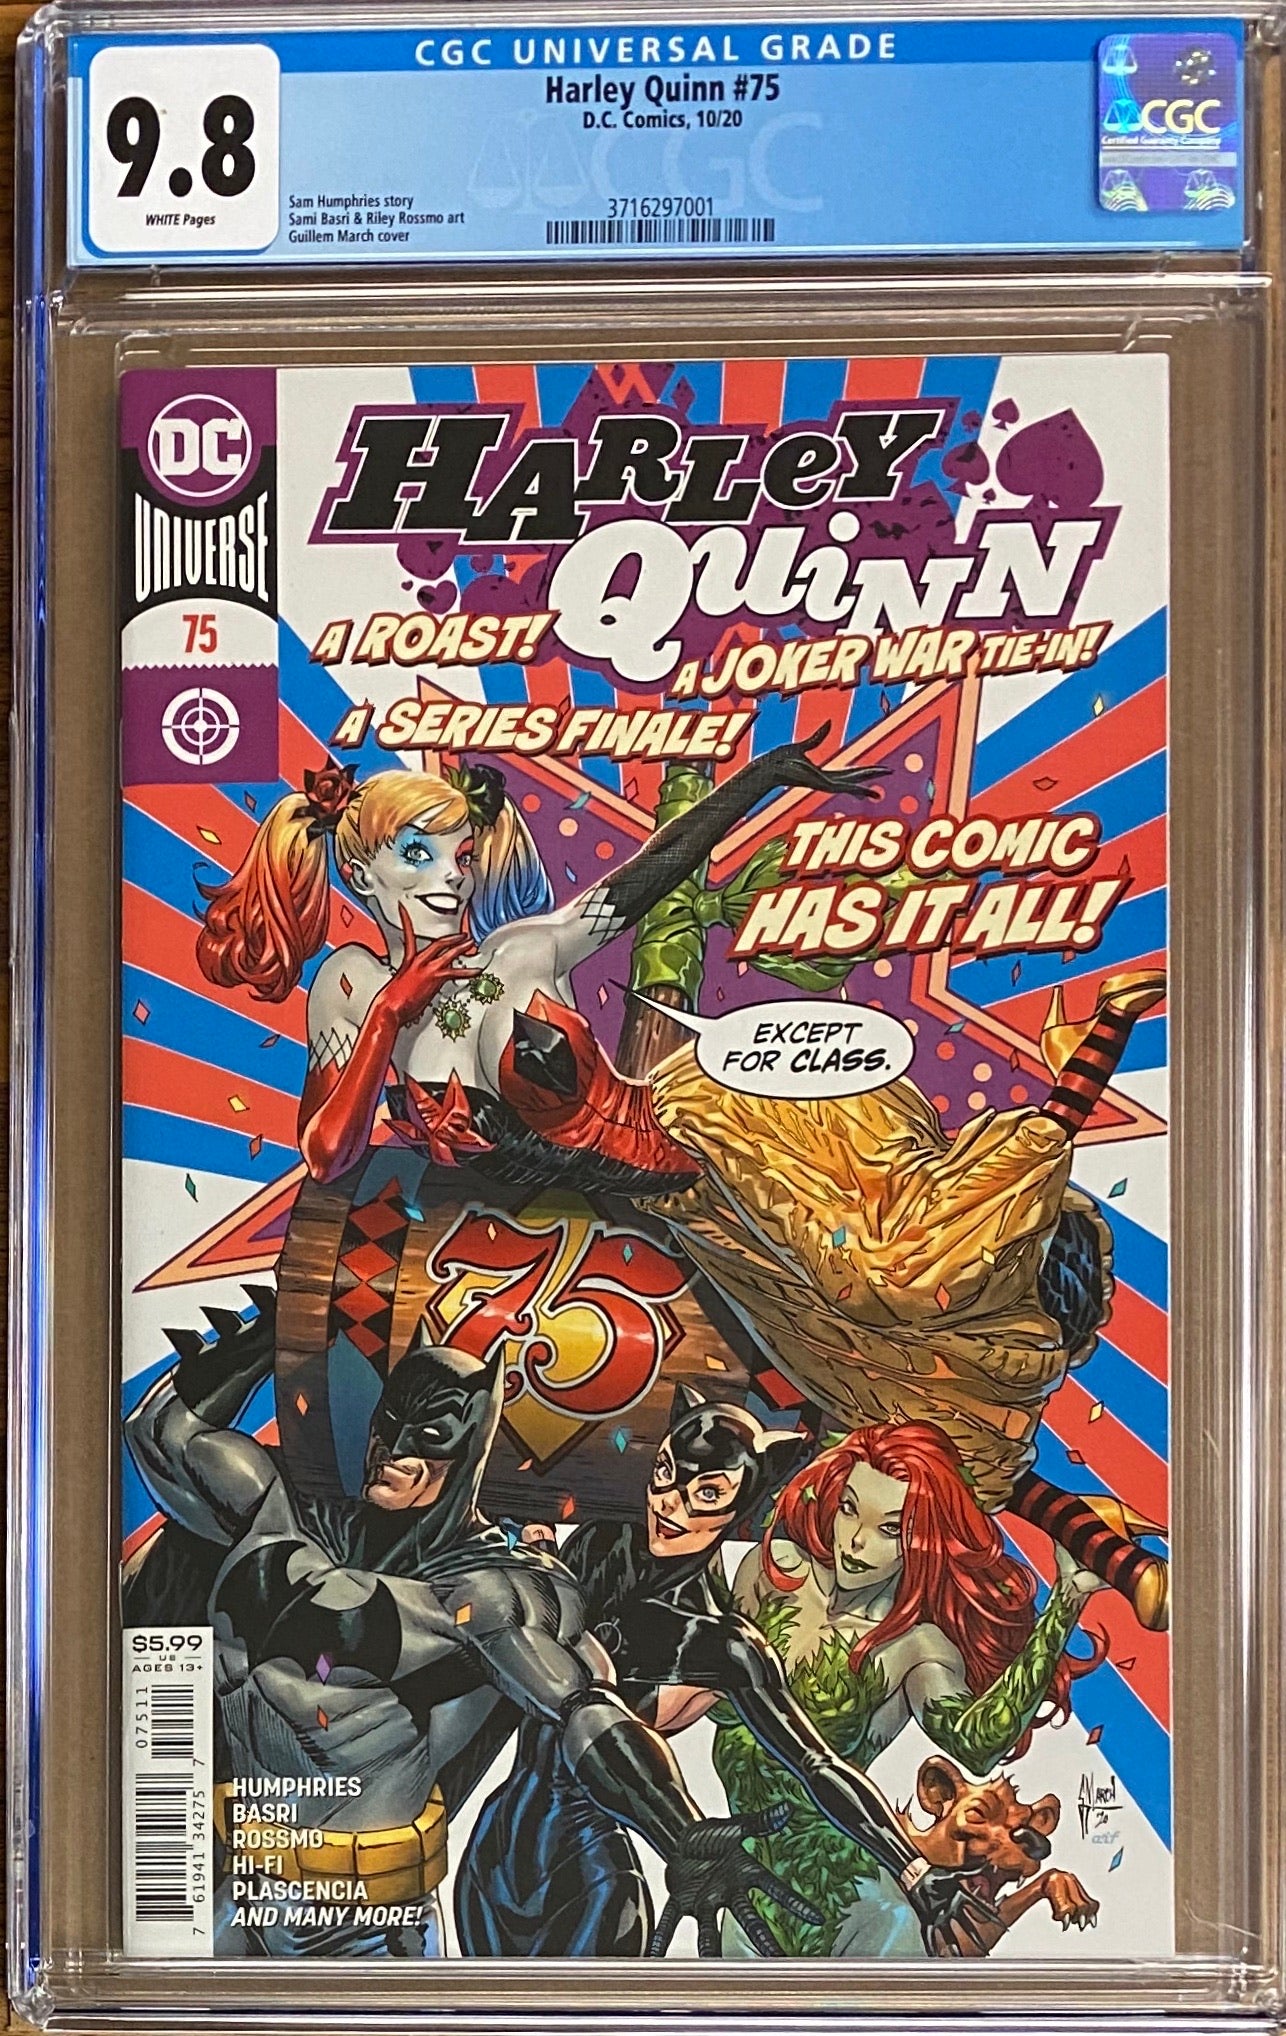 Harley Quinn #75 CGC 9.8 - Final Issue!